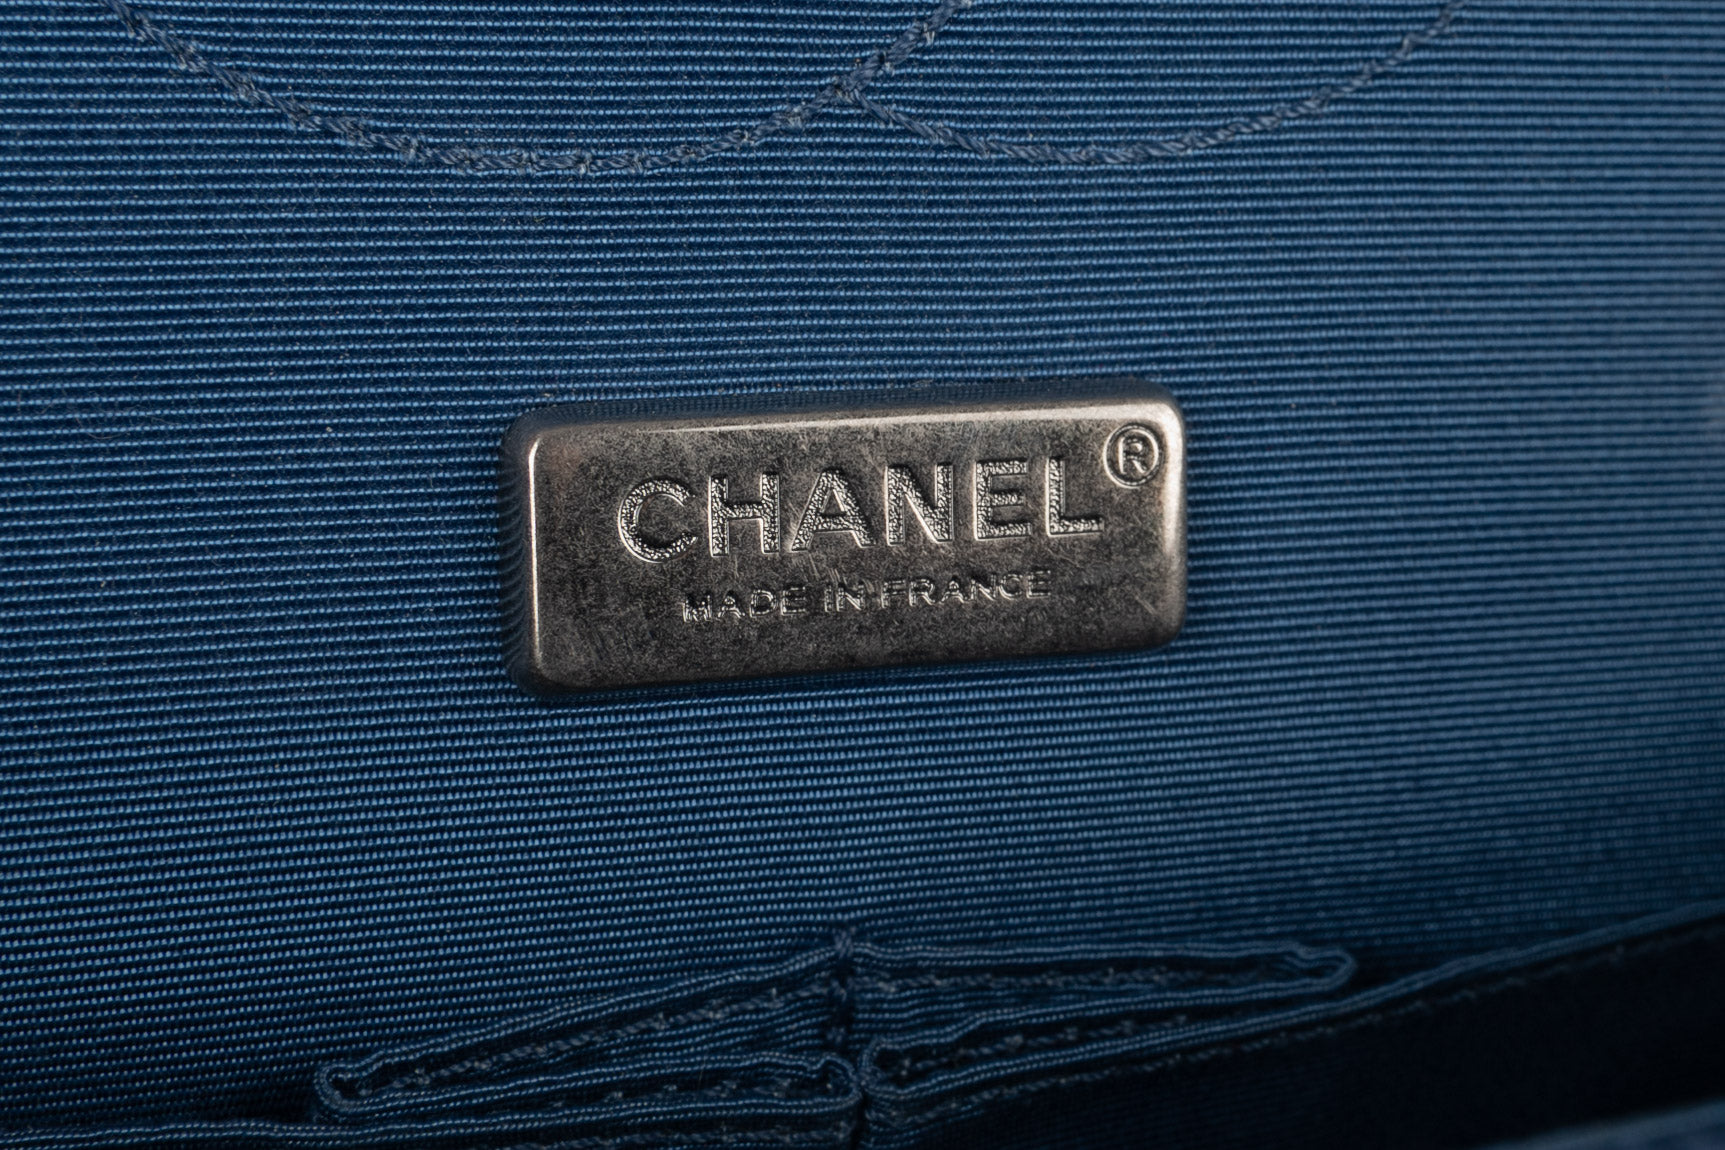 Sac 2.55 Chanel 2015/2016